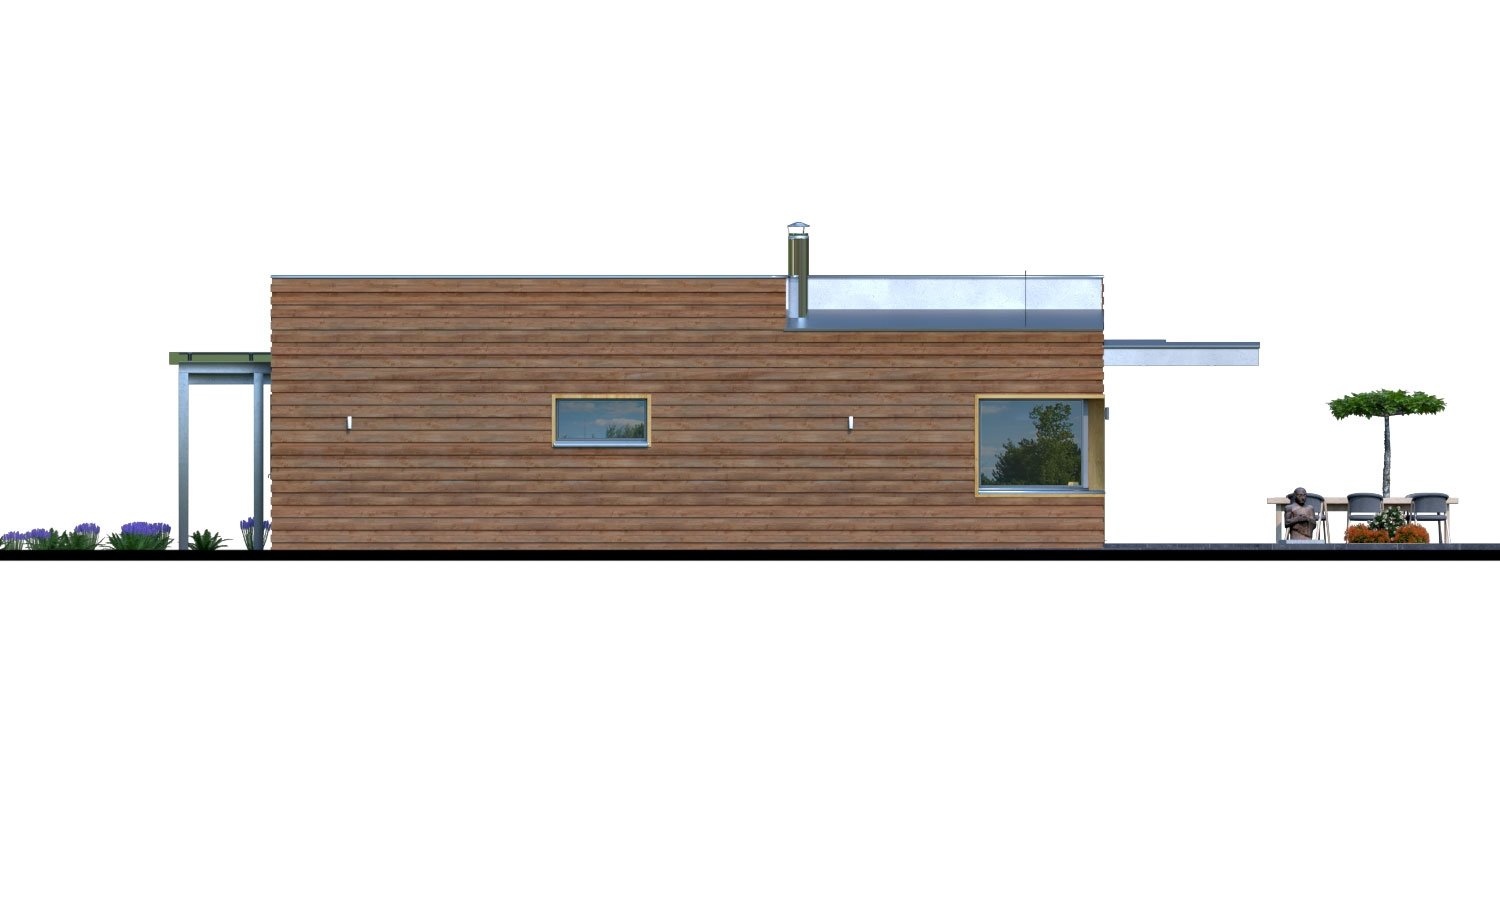 Zrkadlový pohľad 2. - Moderní rodinný dům s přístřeškem pro auto a plochou střechou.